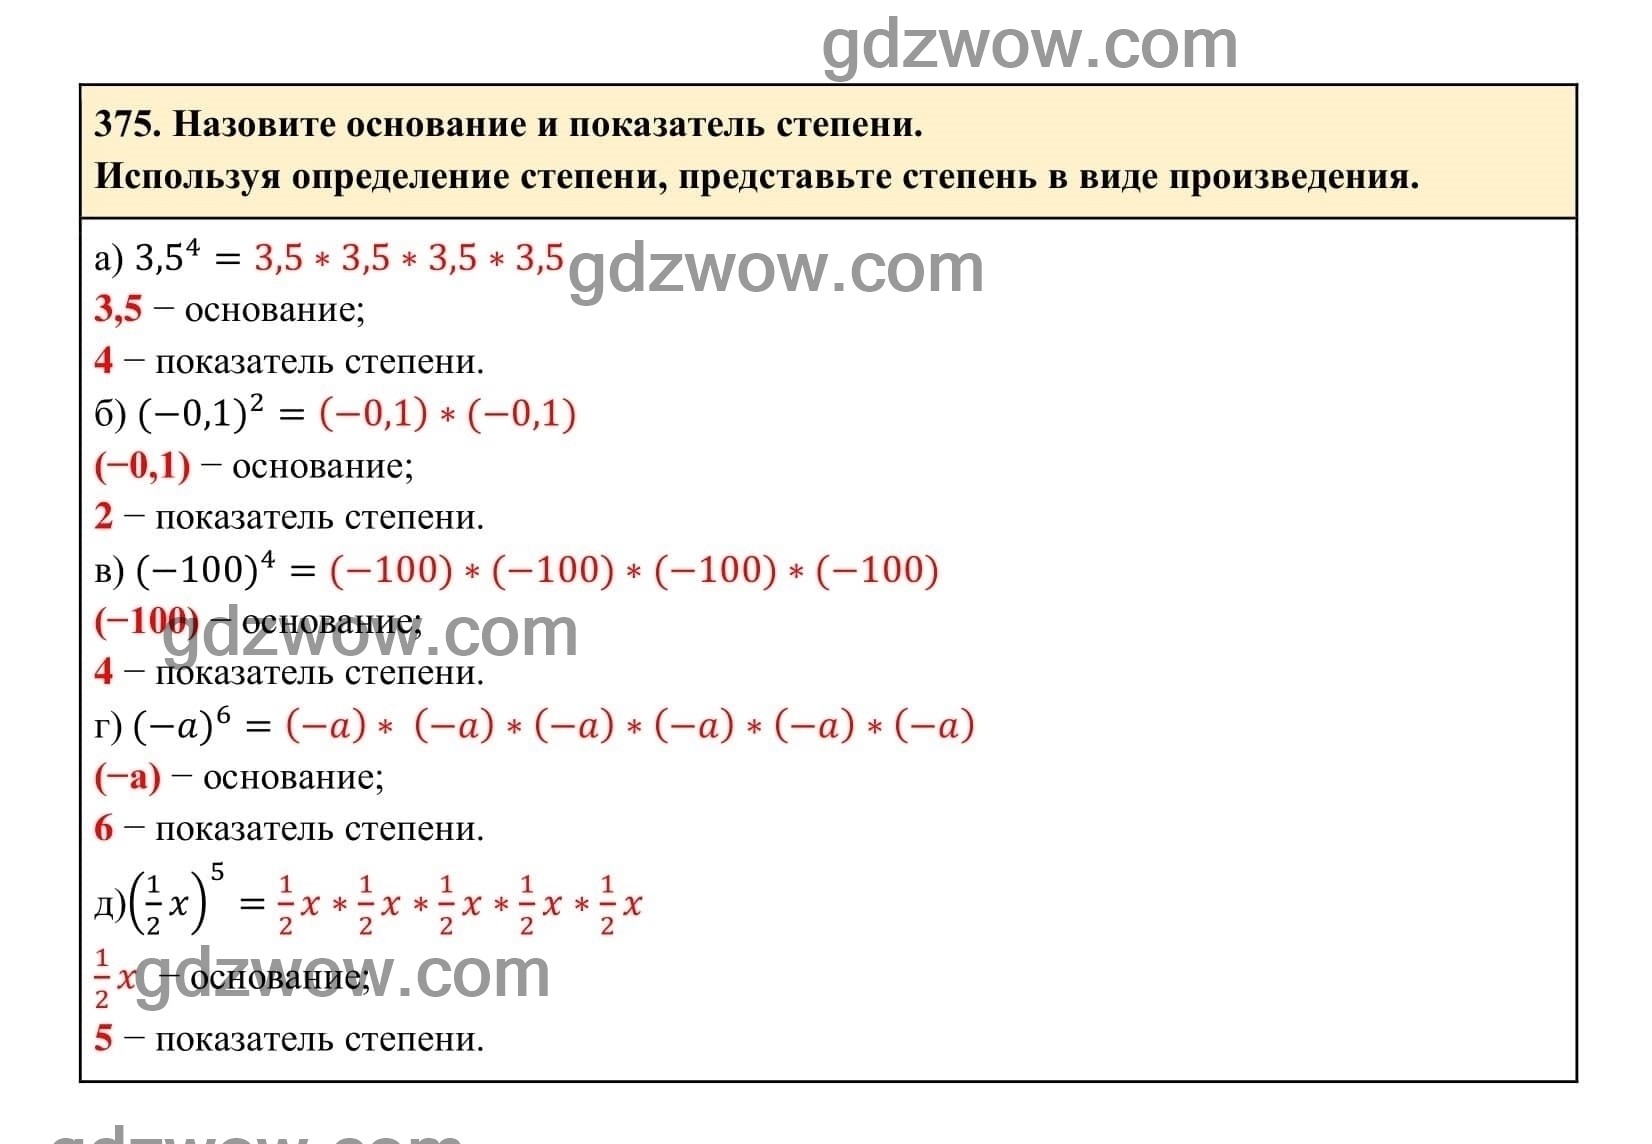 Упражнение 375 - ГДЗ по Алгебре 7 класс Учебник Макарычев (решебник) - GDZwow